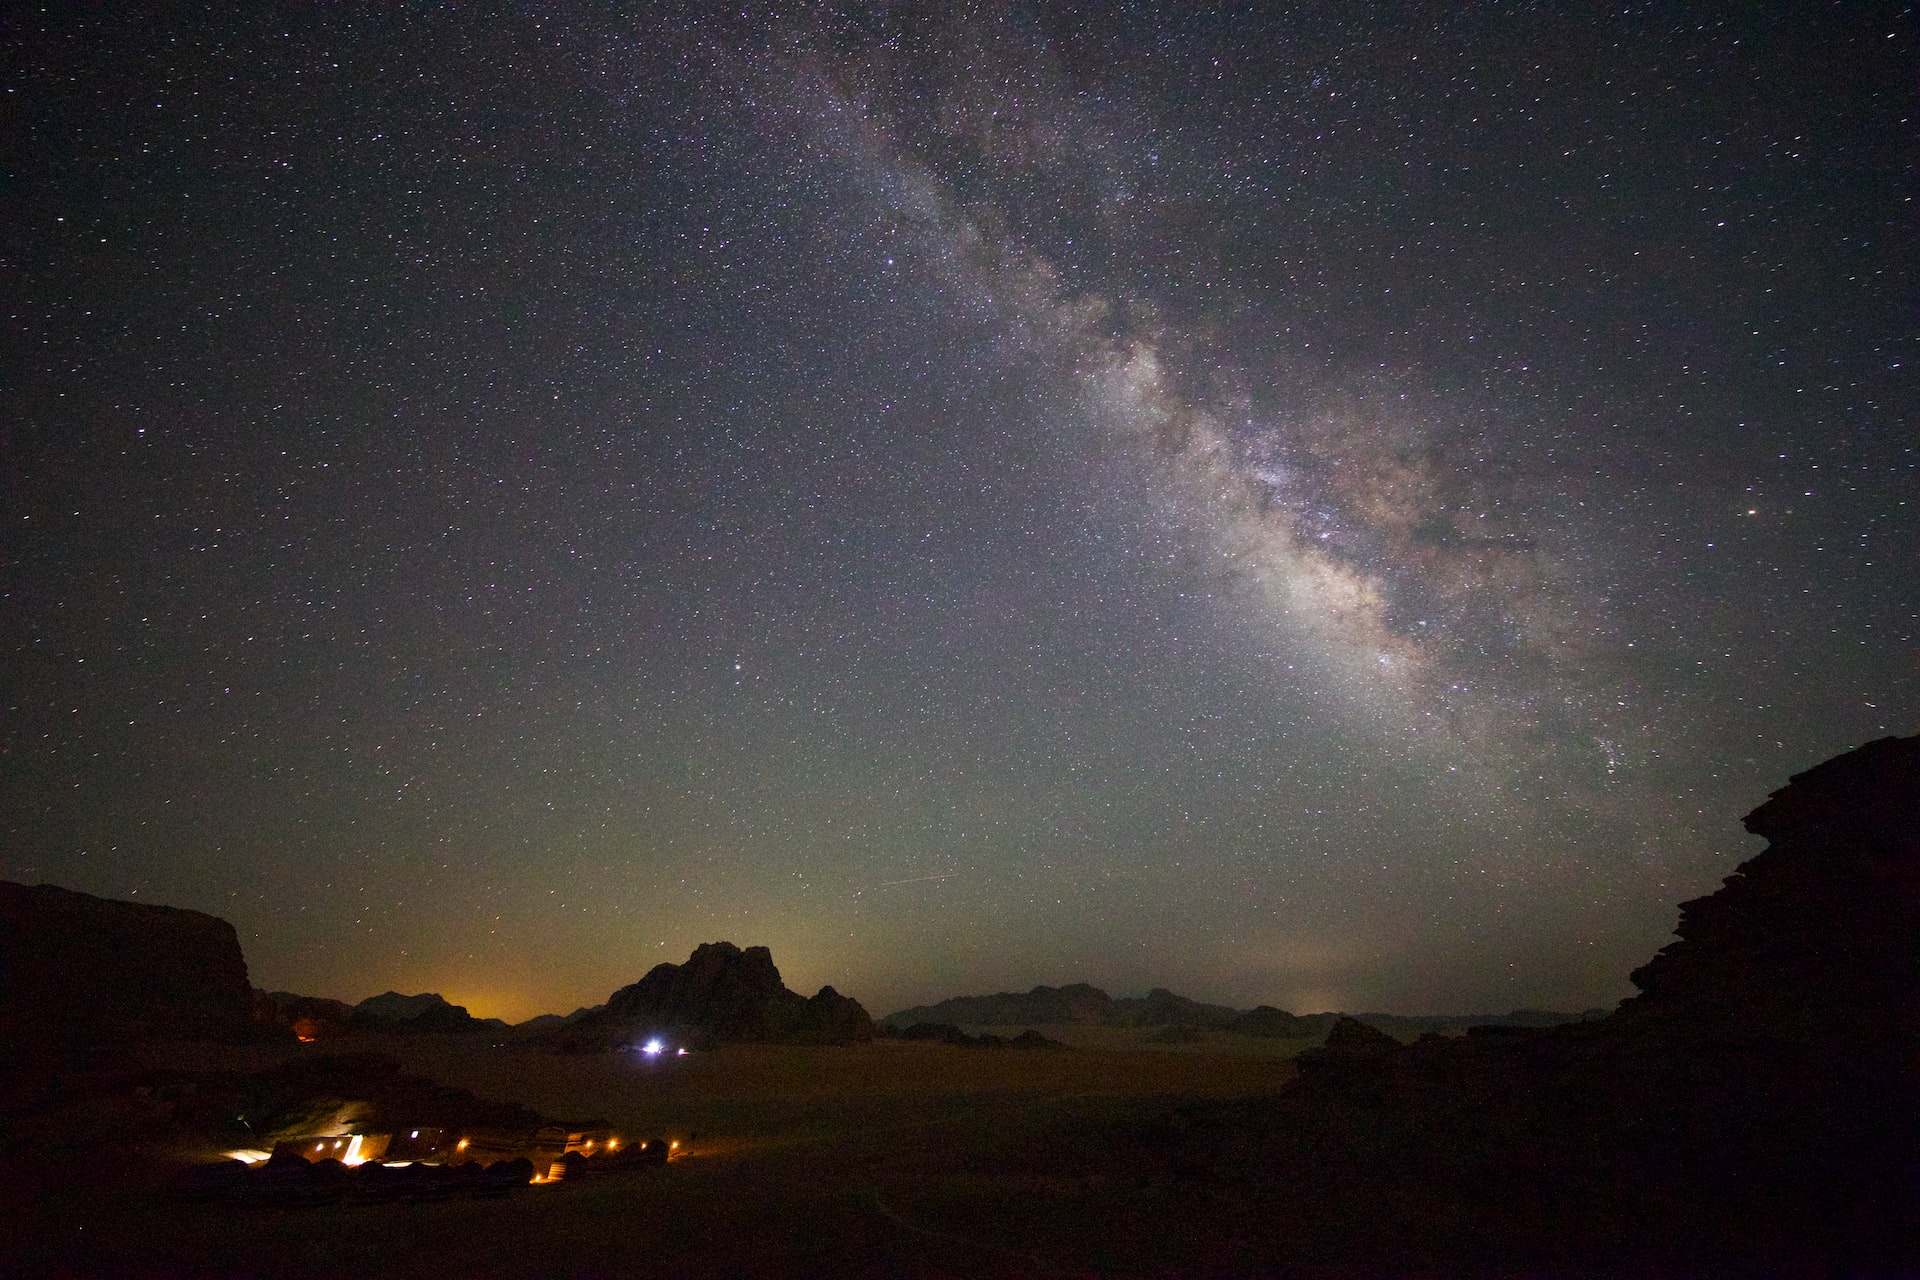 Movies Filmed in Wadi Rum- The night sky really looks alien, Wadi Rum